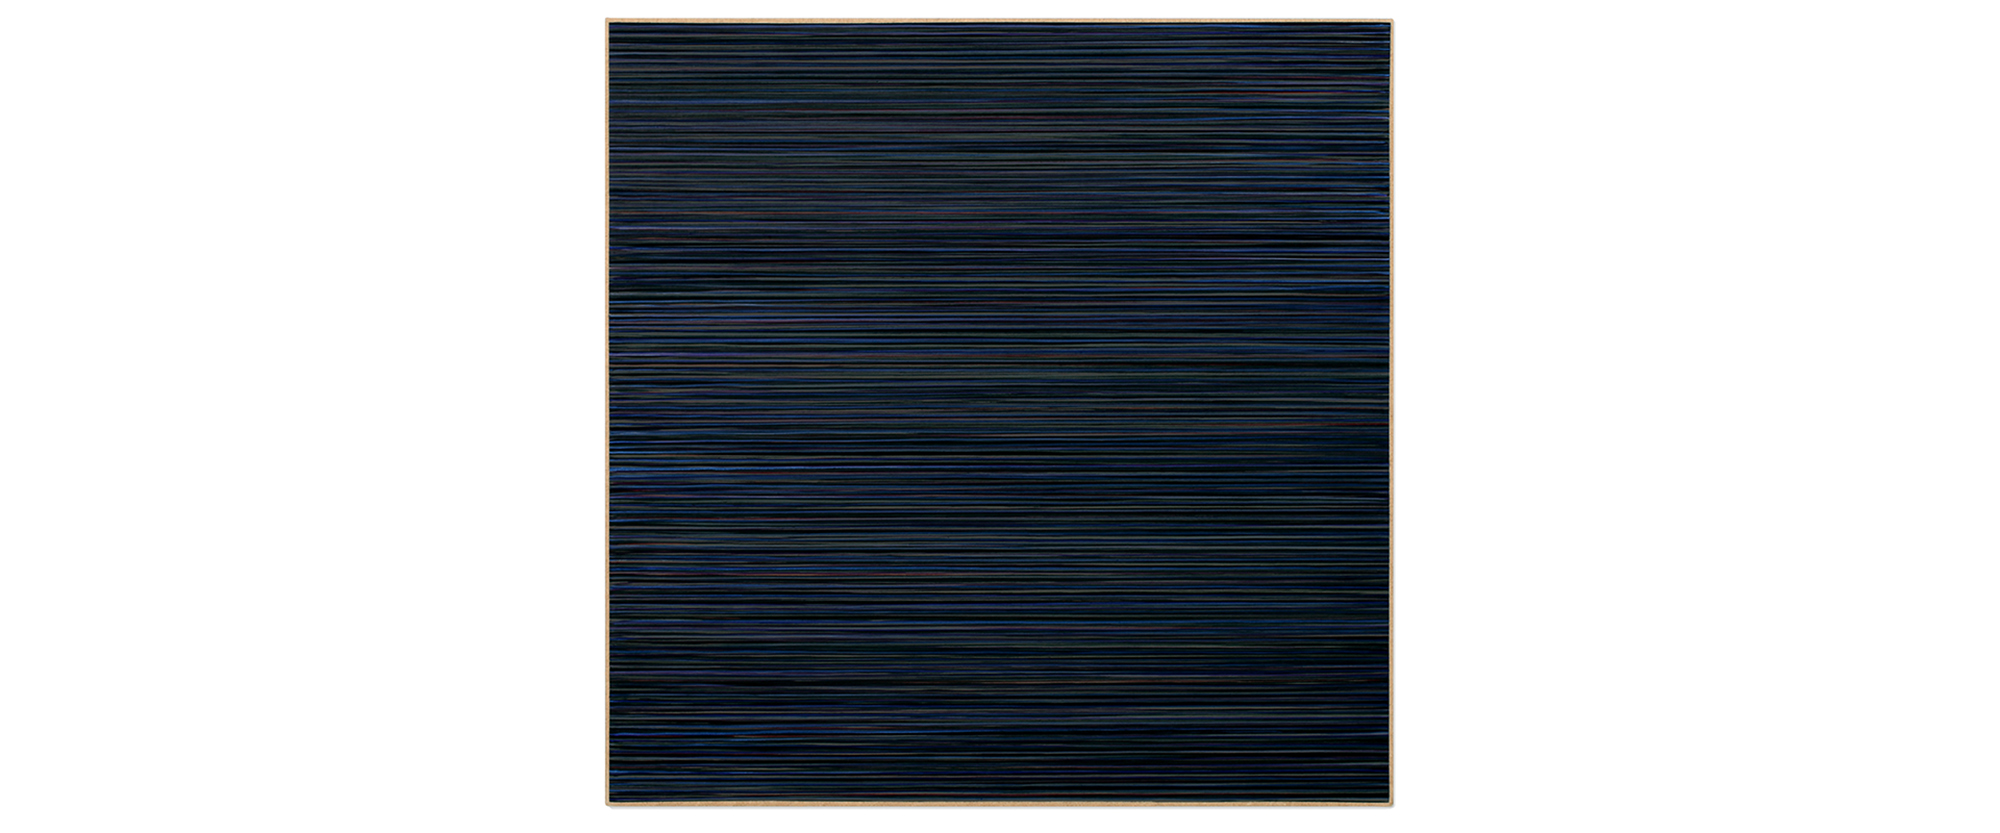 Untitled (1806) - 2018, Acryl auf Leinwand, 110 x 110 cm / 43,3 x 43,3 inches